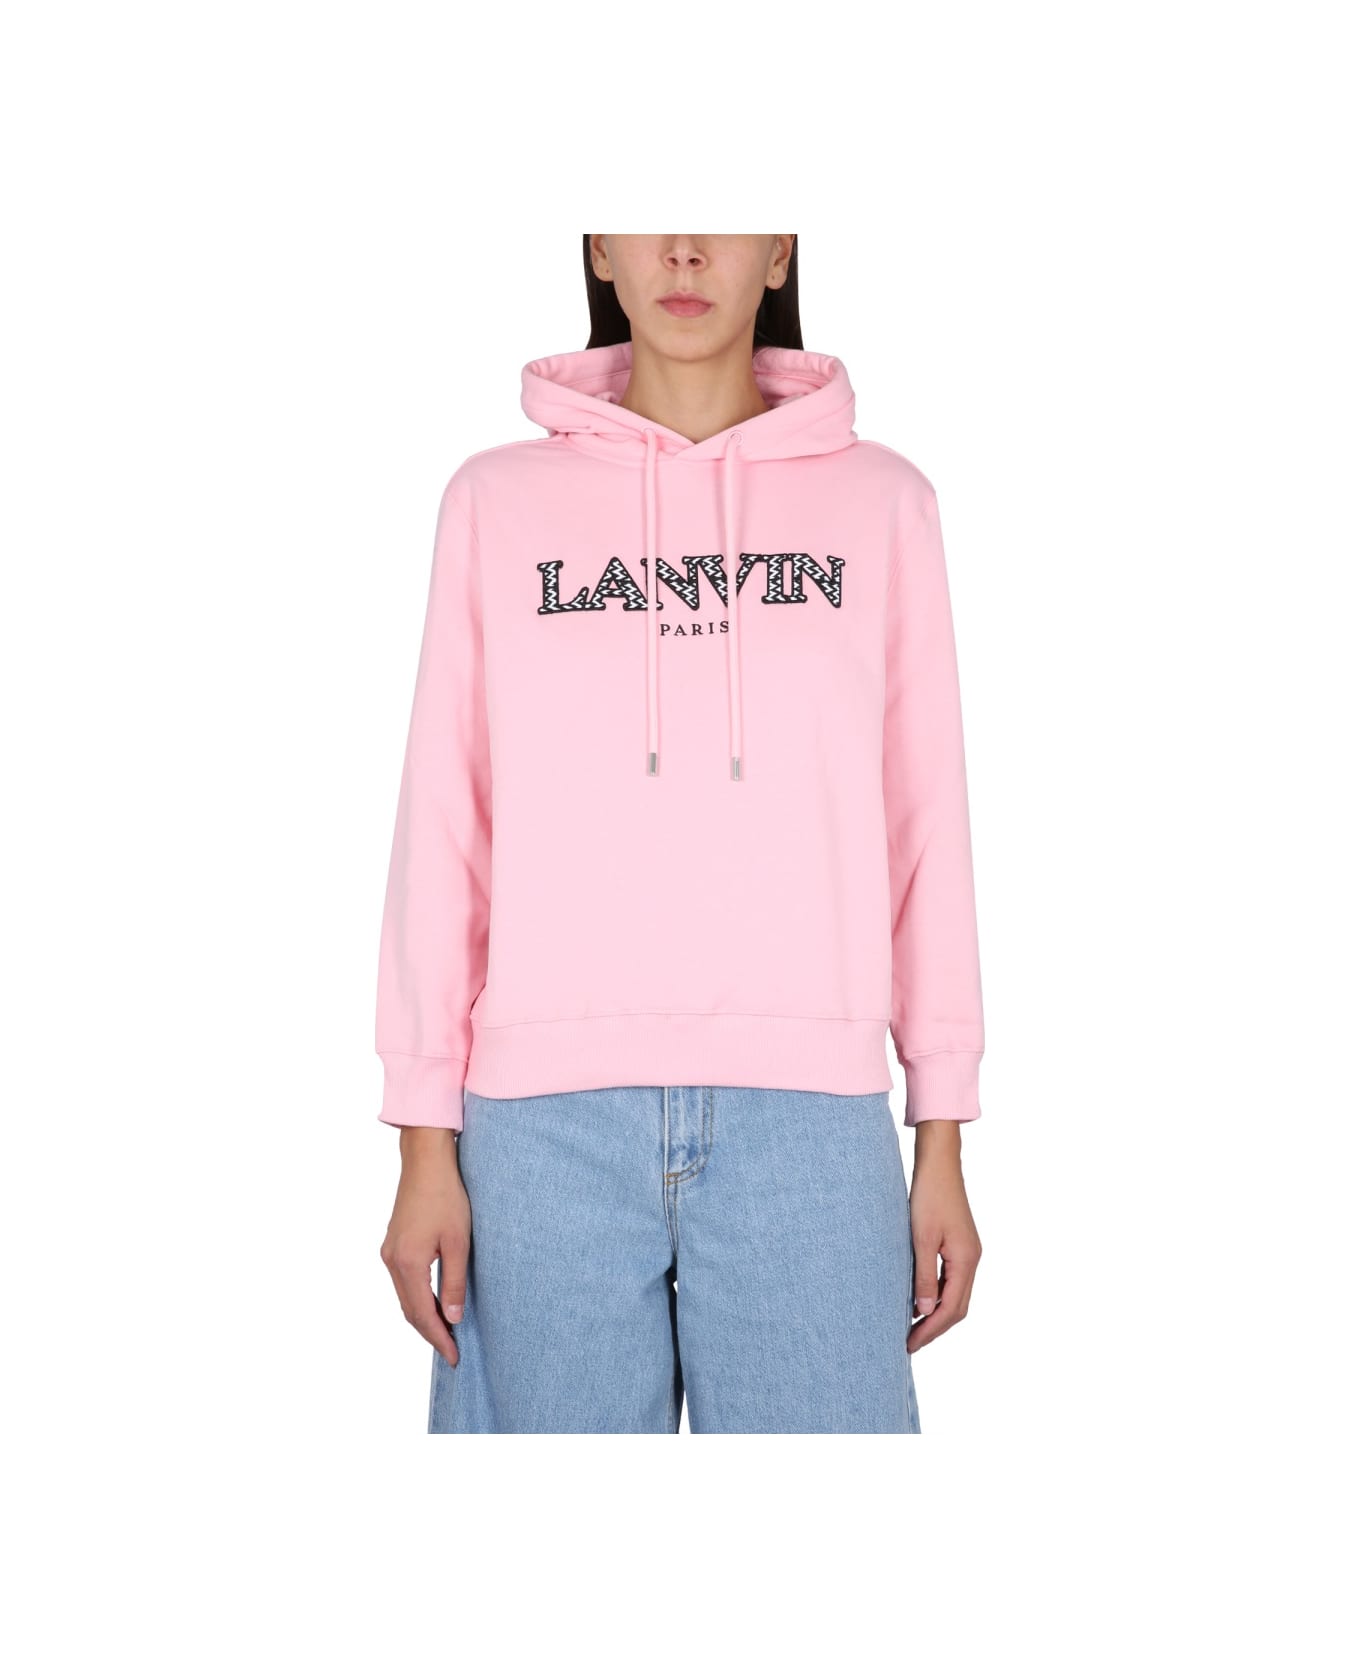 Lanvin Rose Cotton Sweatshirt - PINK